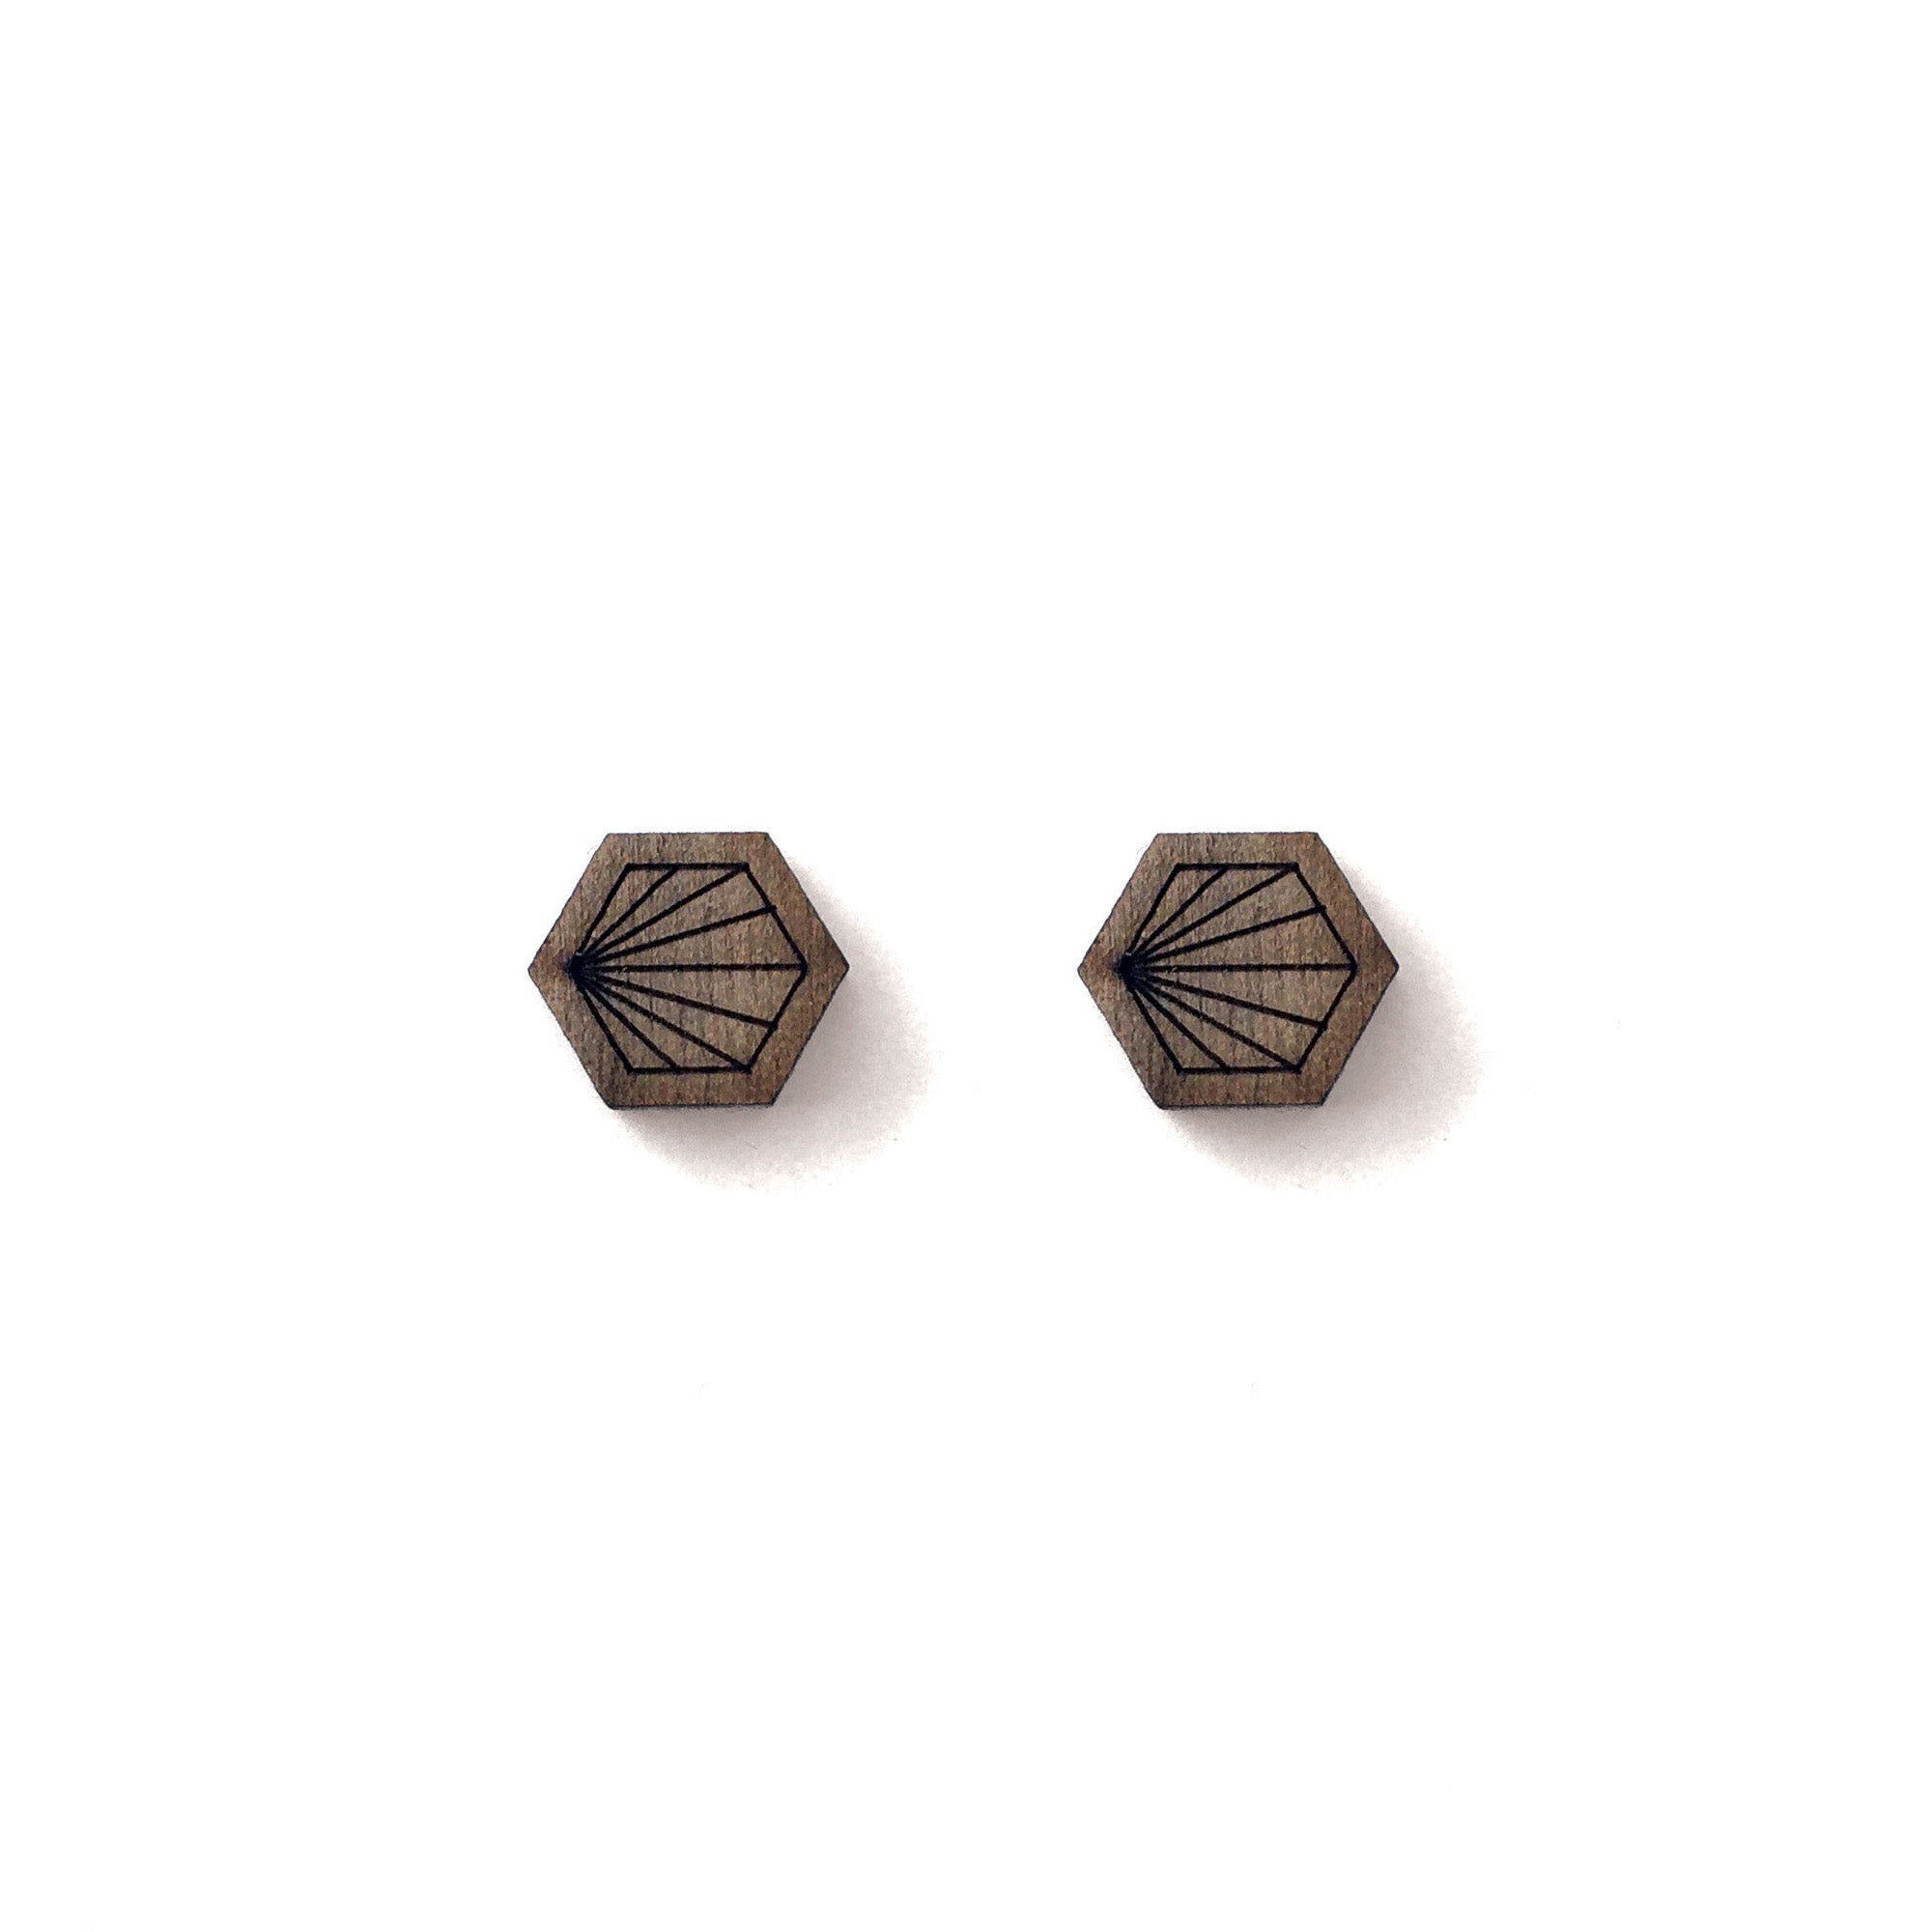 Geometric Walnut Earrings - Hexagon